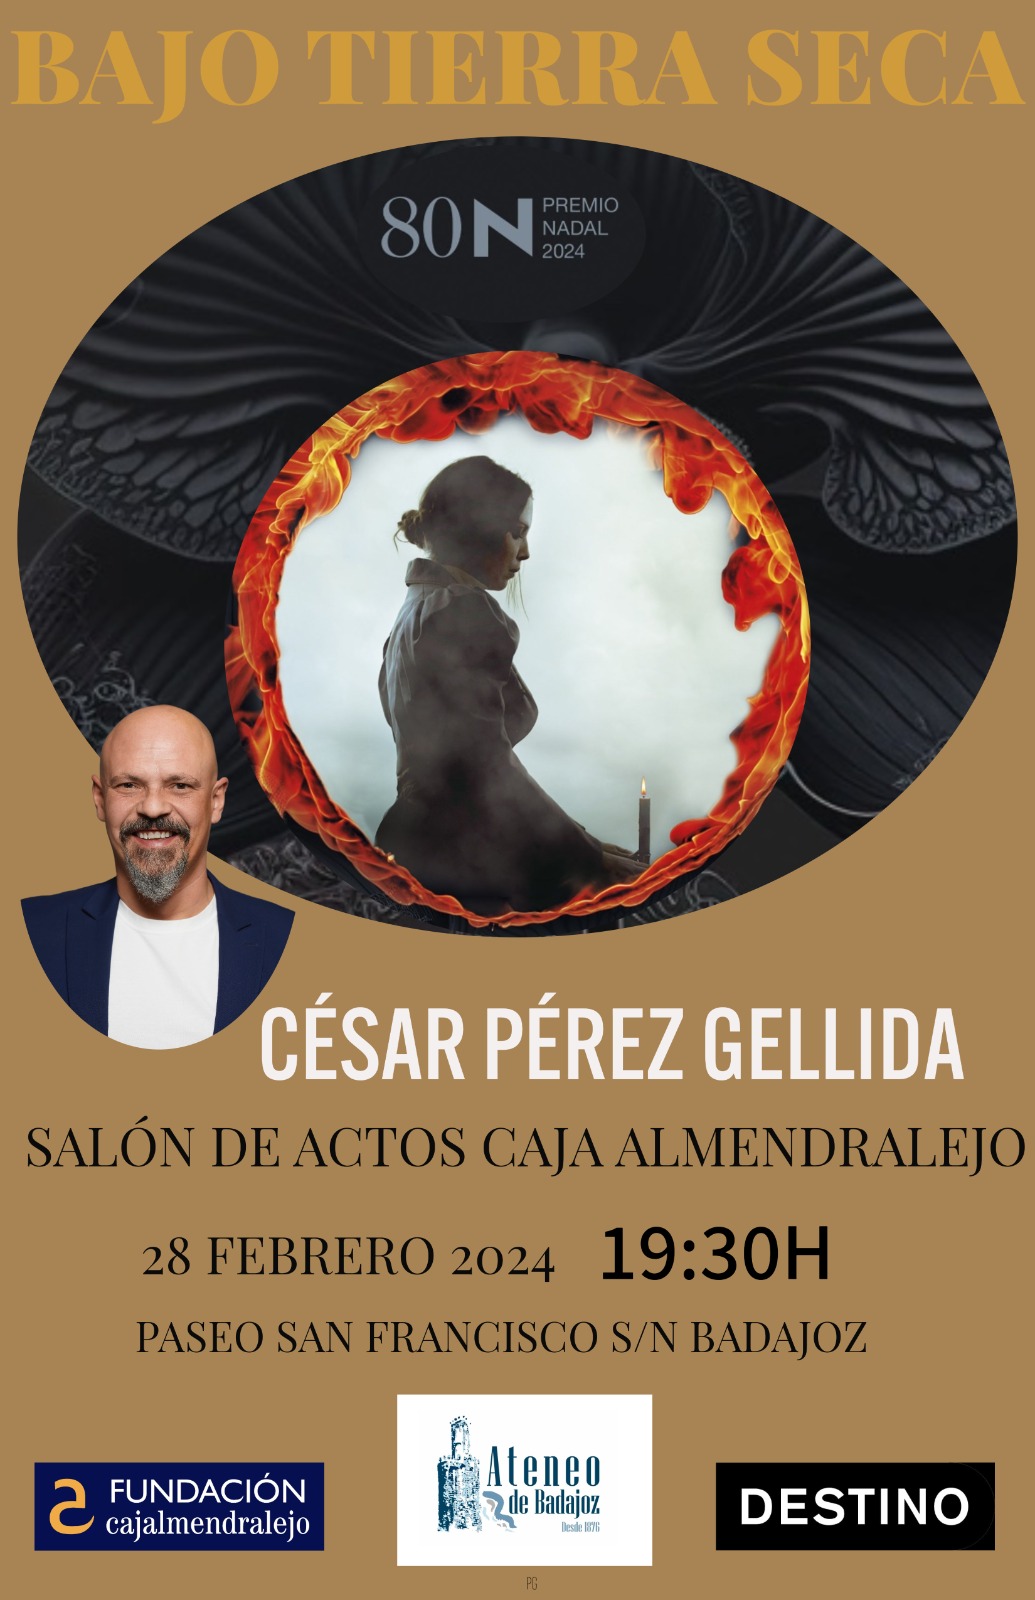 César Pérez Gellida, premio Nadal 2024